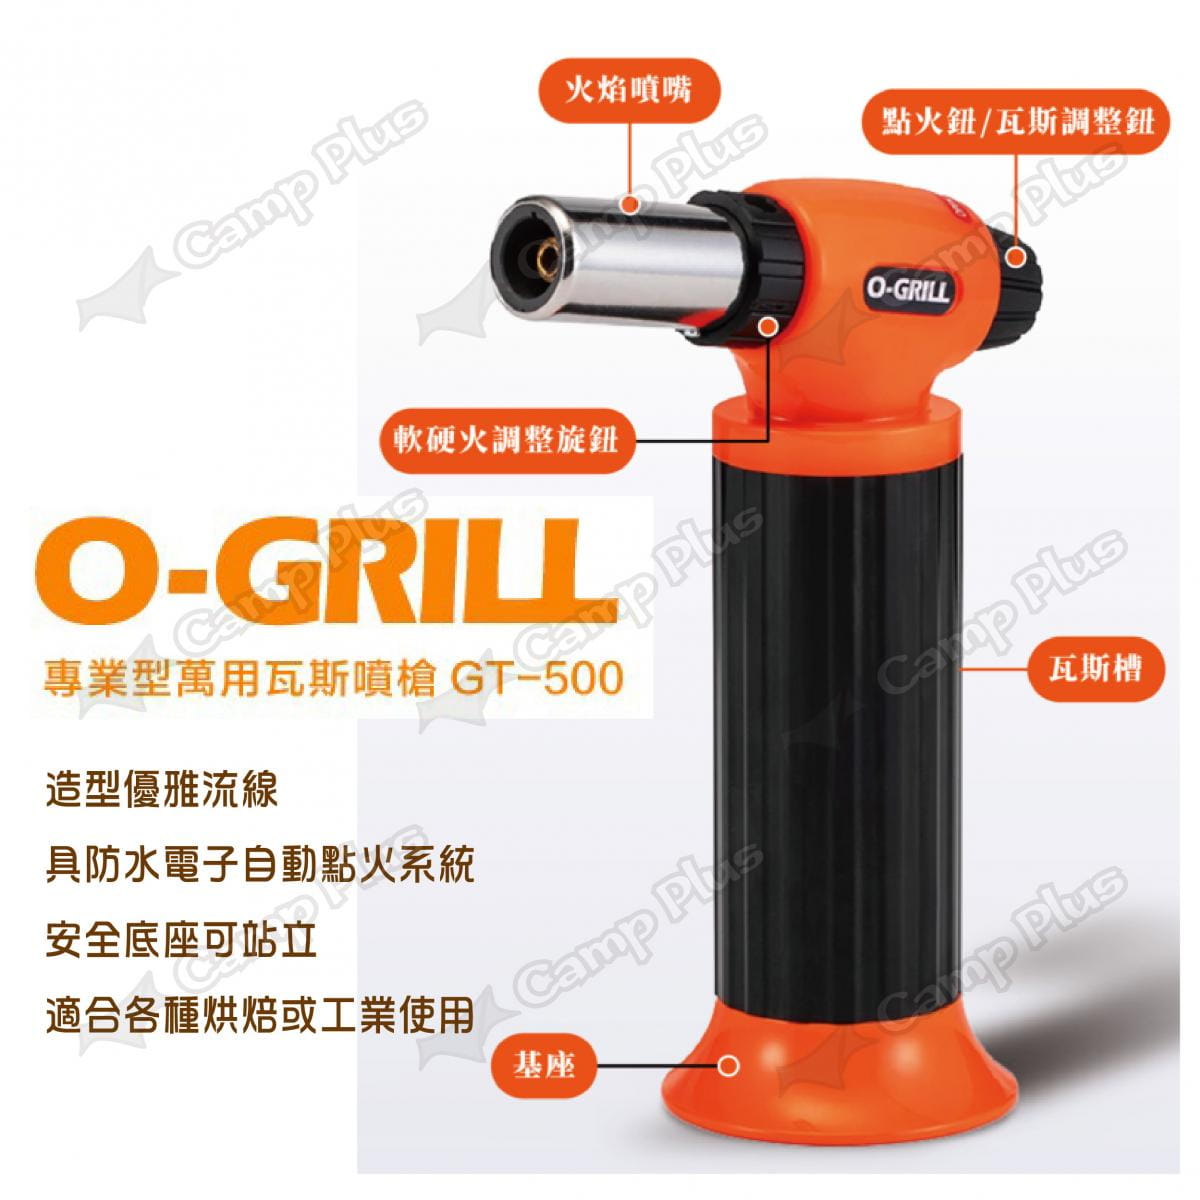 【O-GRILL】專業型萬用瓦斯噴槍 GT-500 (悠遊戶外) 3